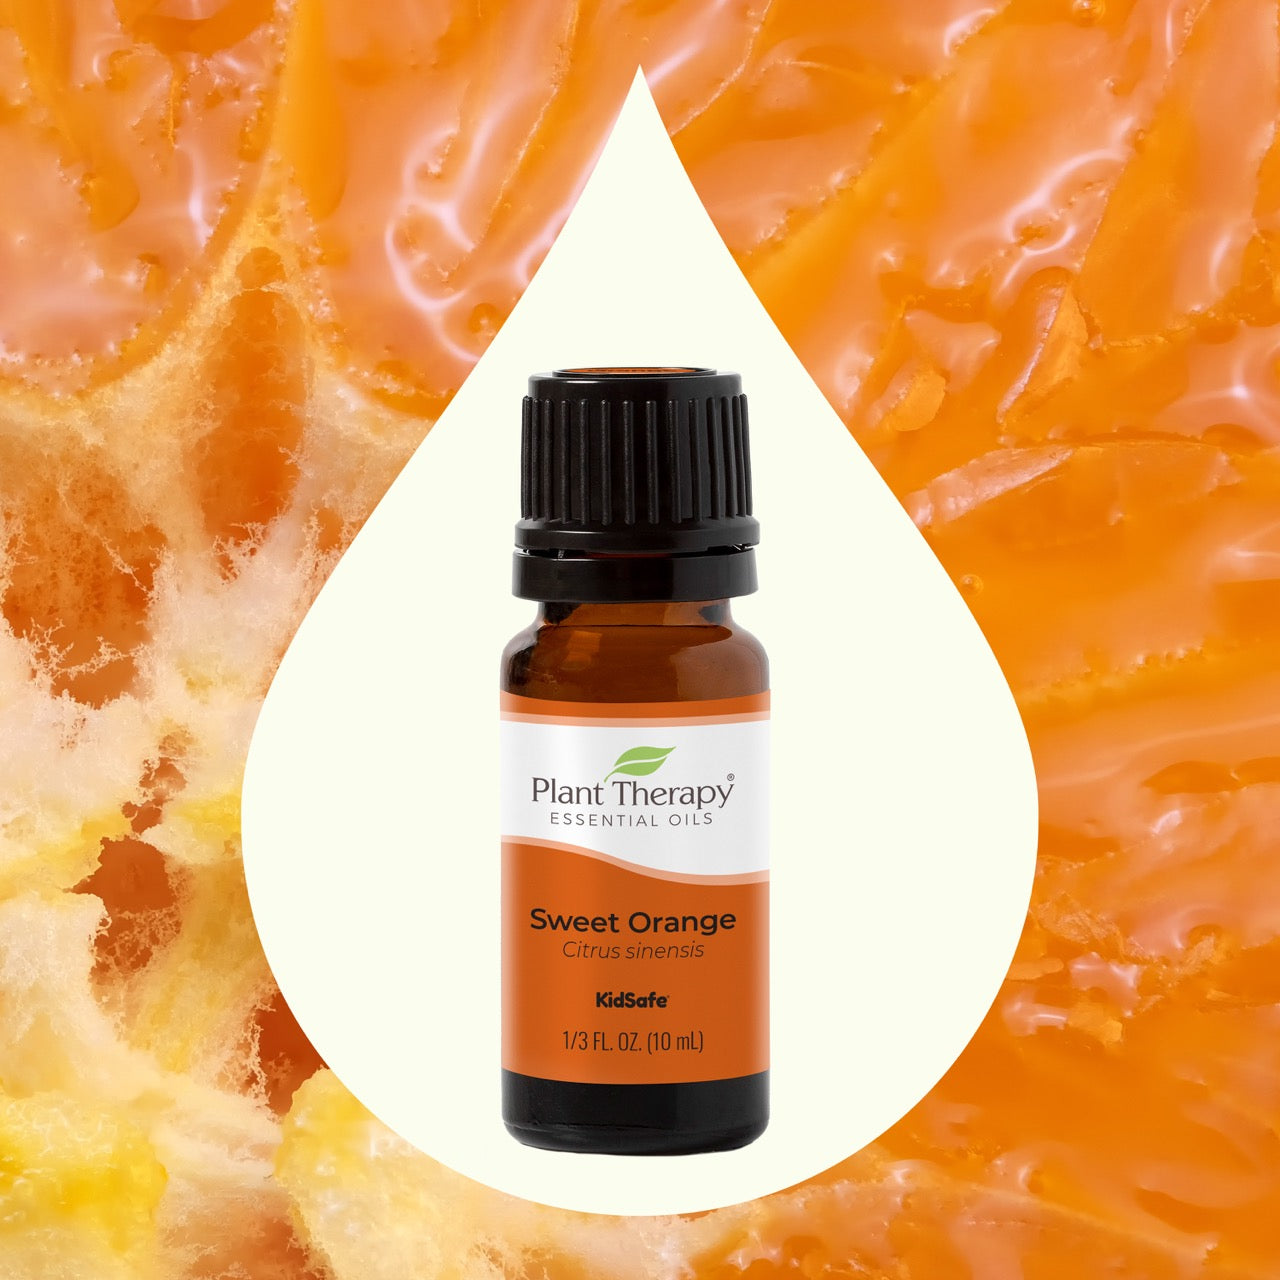 Sweet Orange Essential Oil key ingredient image